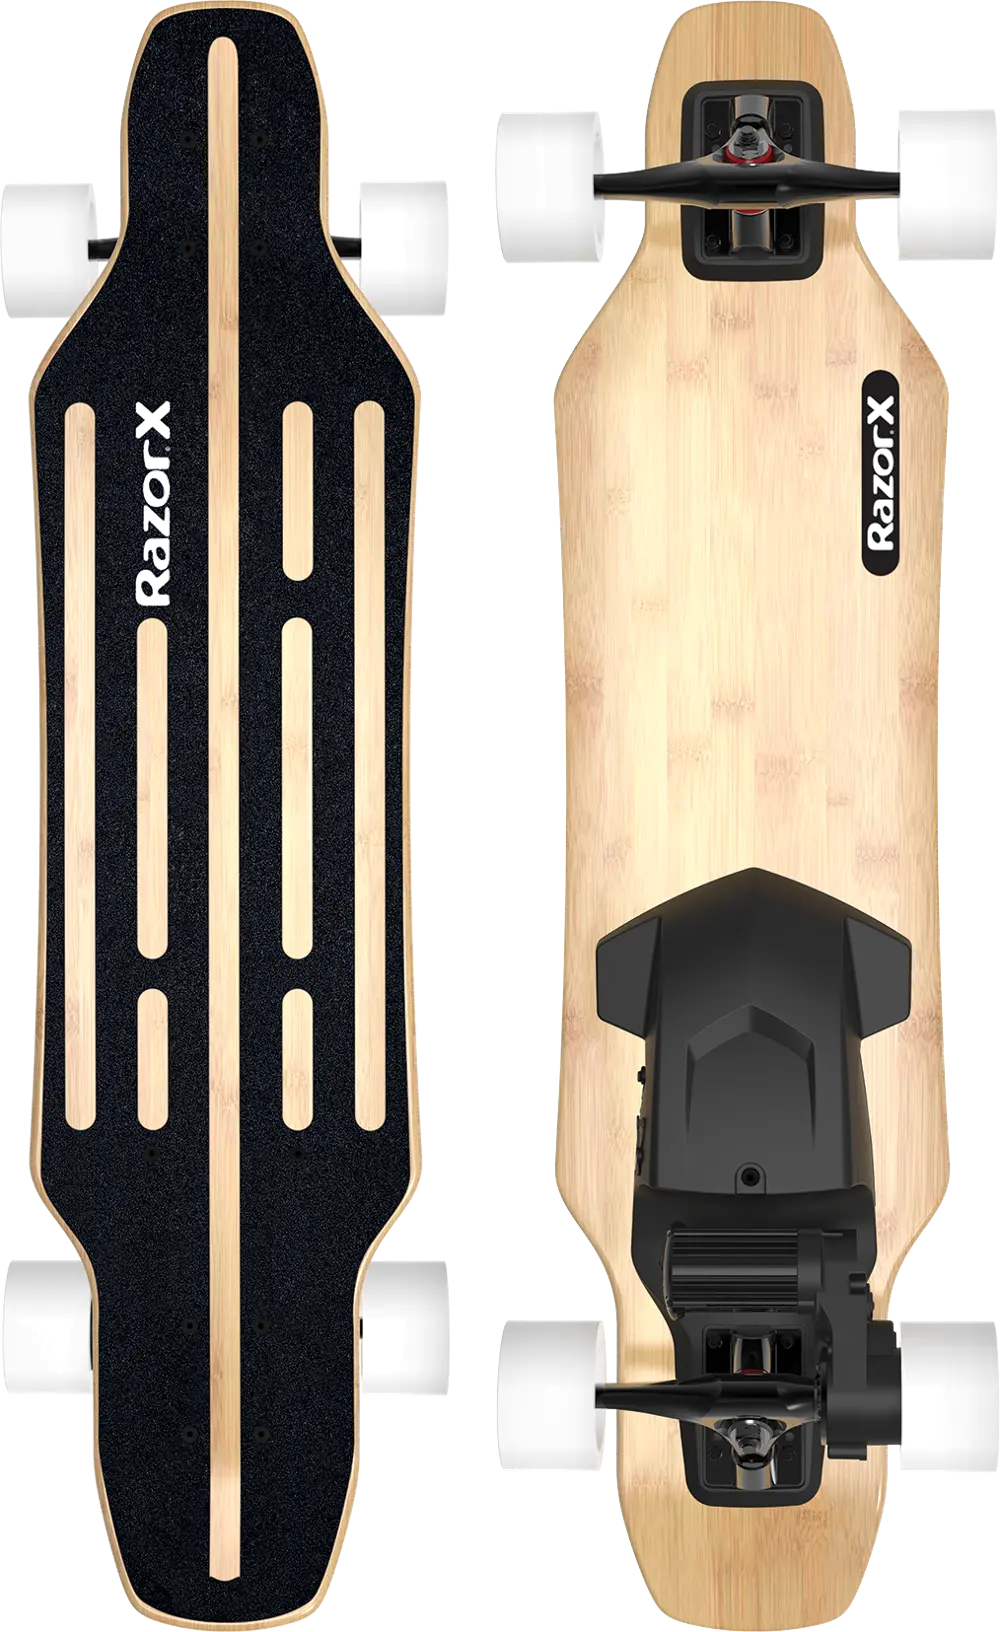 25133098,LONGBOARD RazorX Longboard Electric Skateboard-1